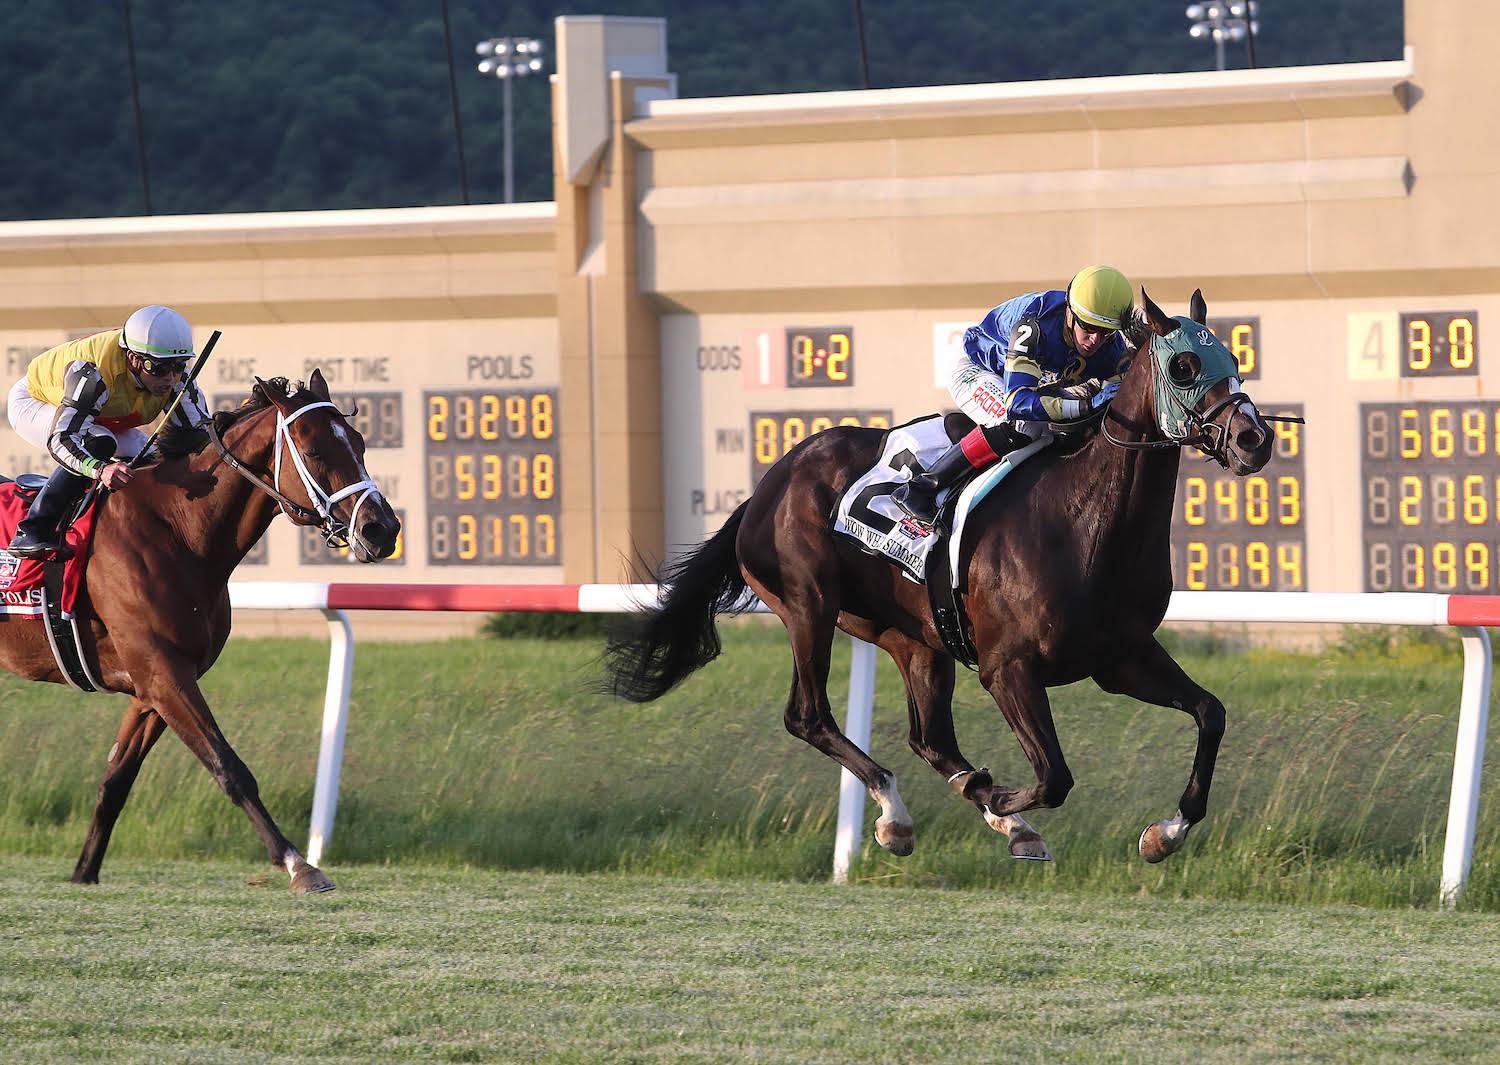 DERBY DE KENTUCKY EN PENN NATIONAL — The Pennsylvania Horse Racing